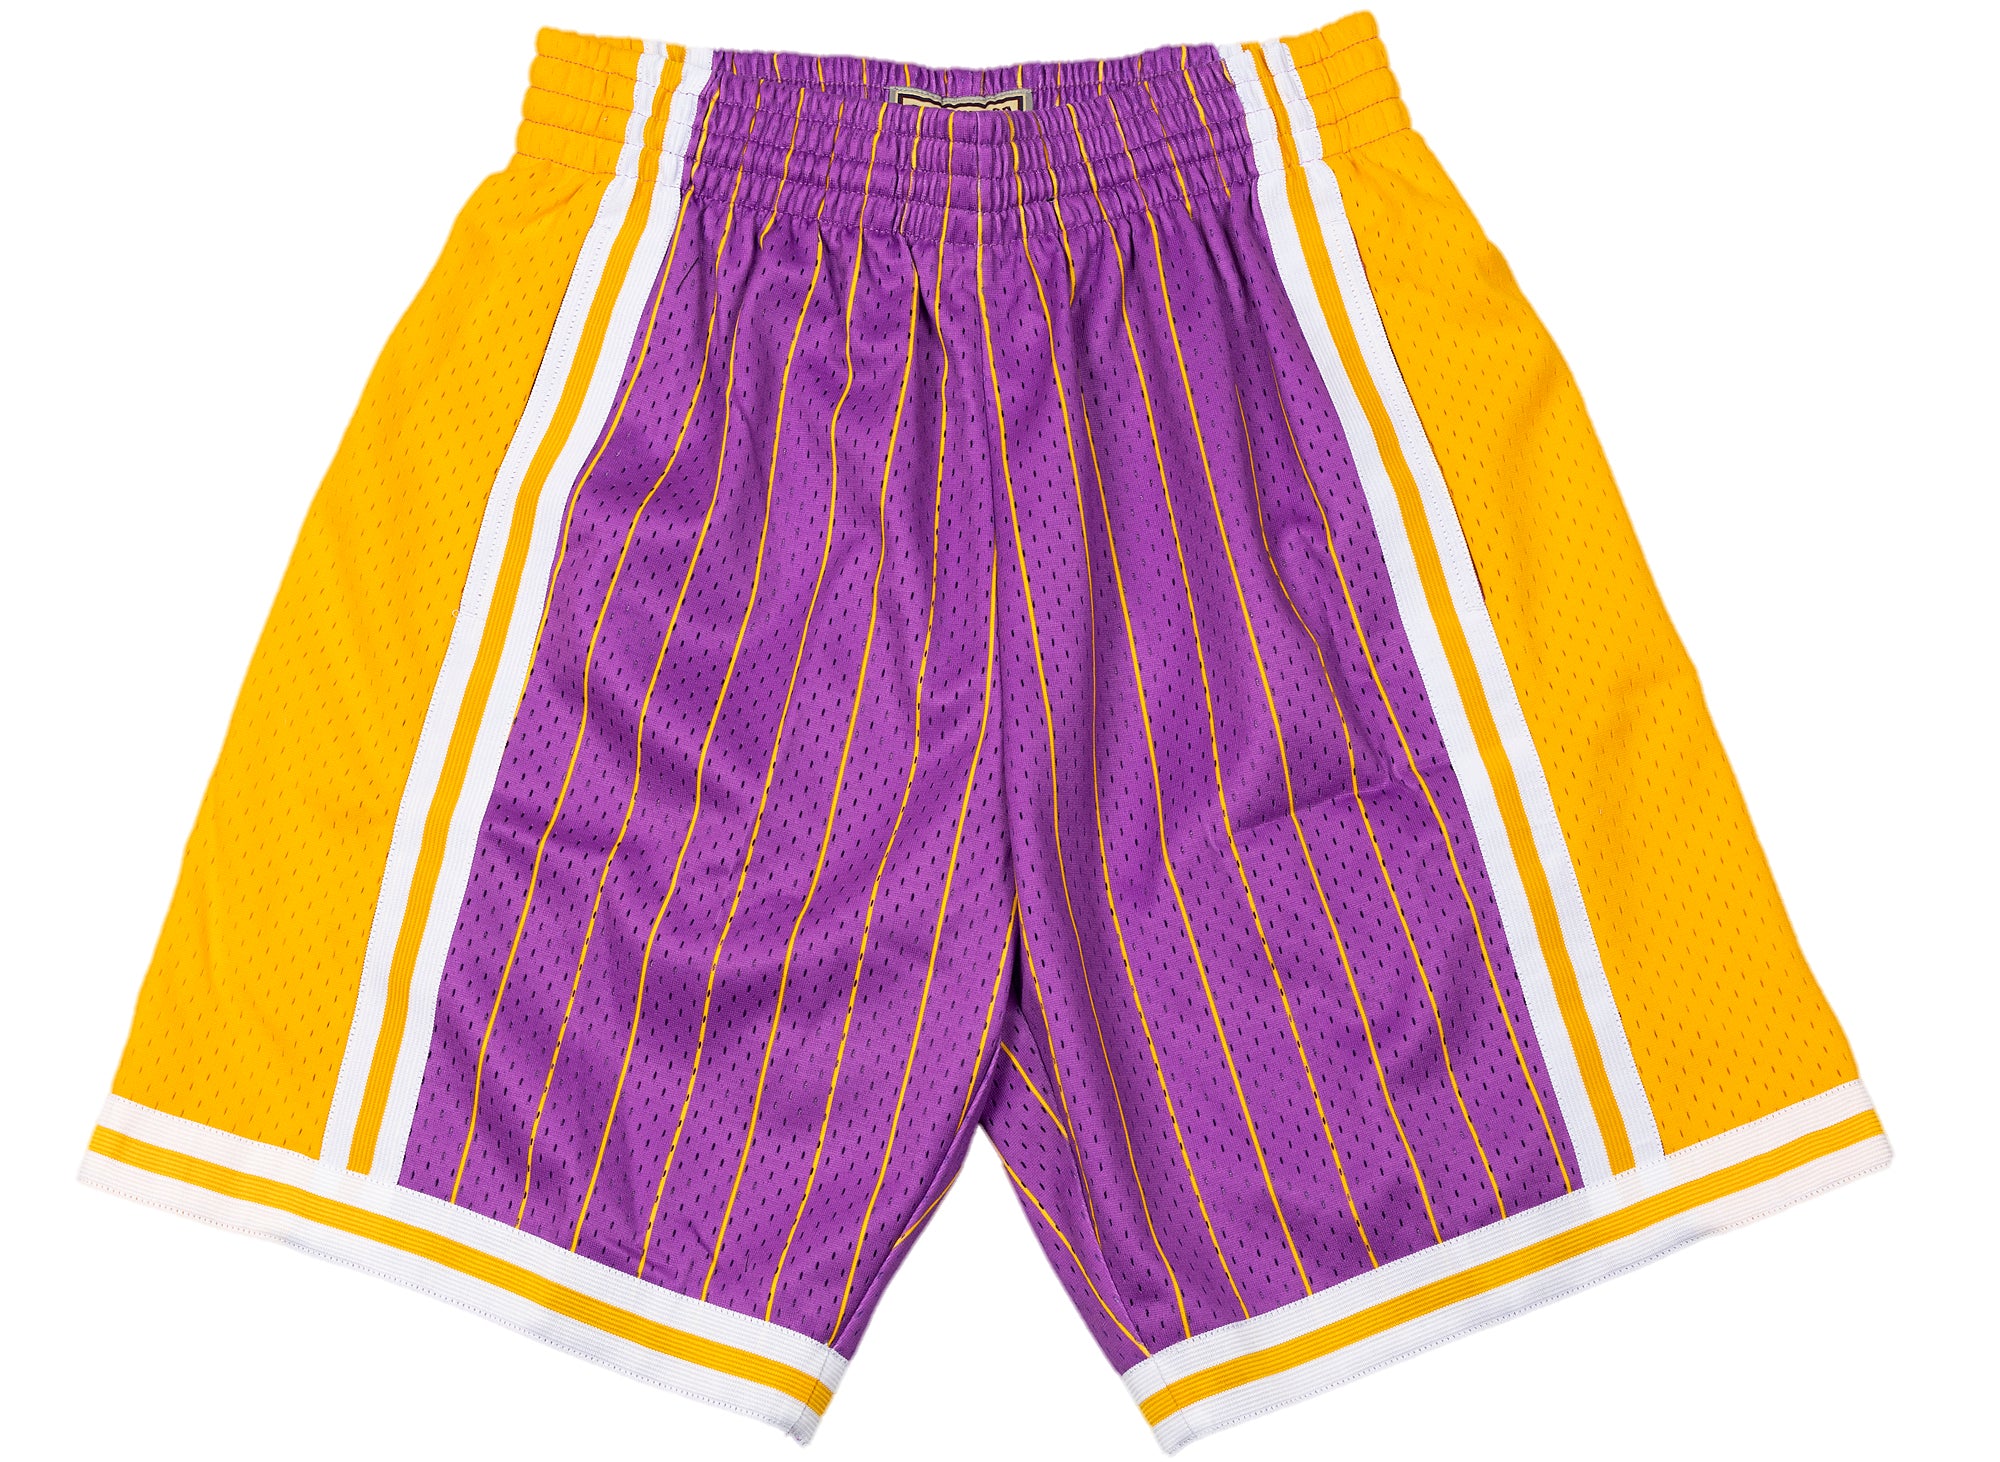 Mitchell & Ness La Lakers Neon World Swingman Shorts M